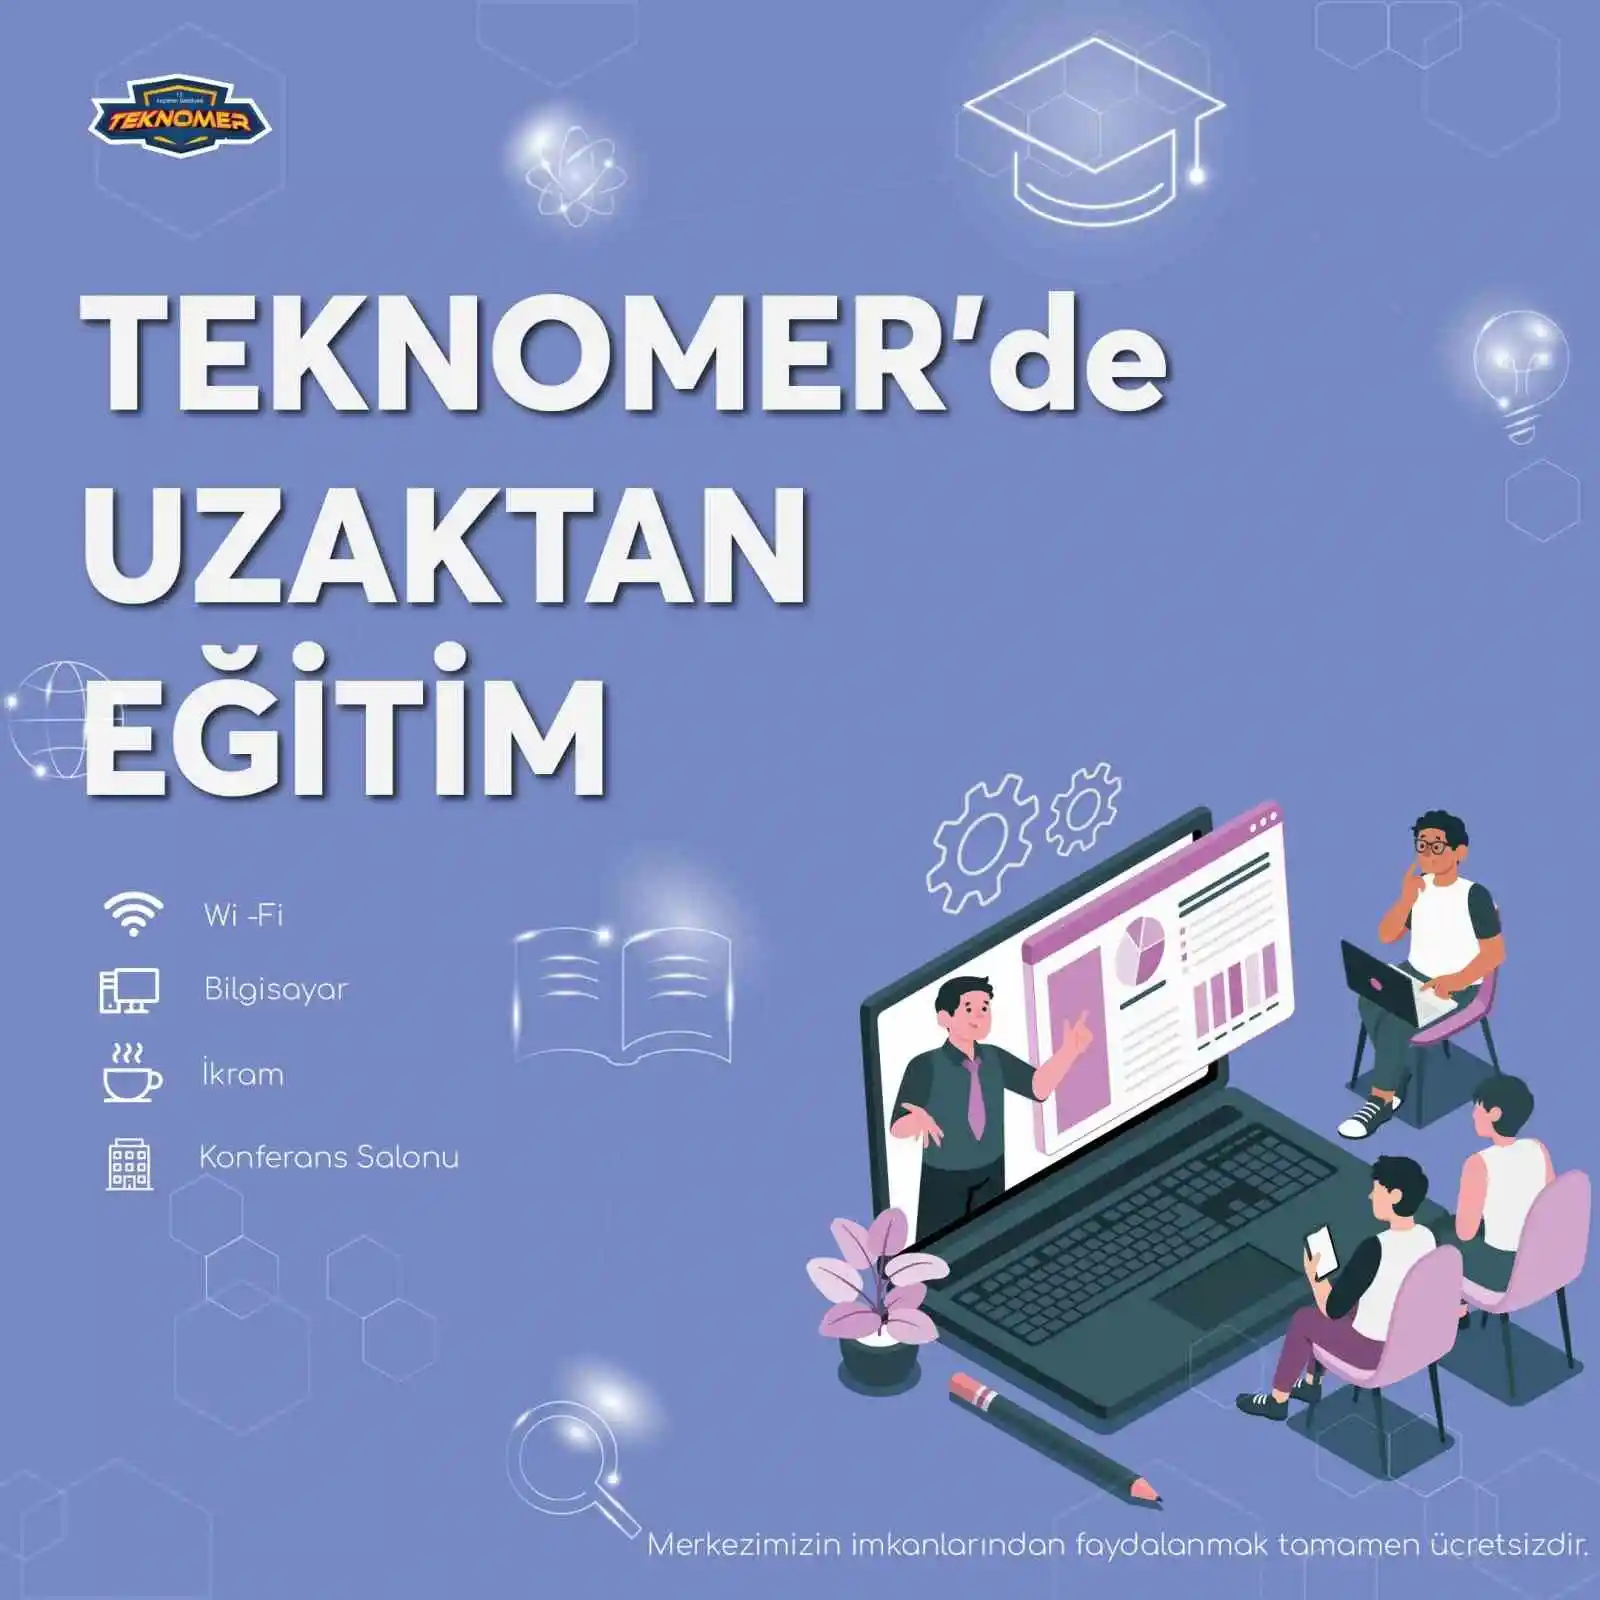 TEKNOMER online eğitim için kapılarını üniversitelilere açtı
